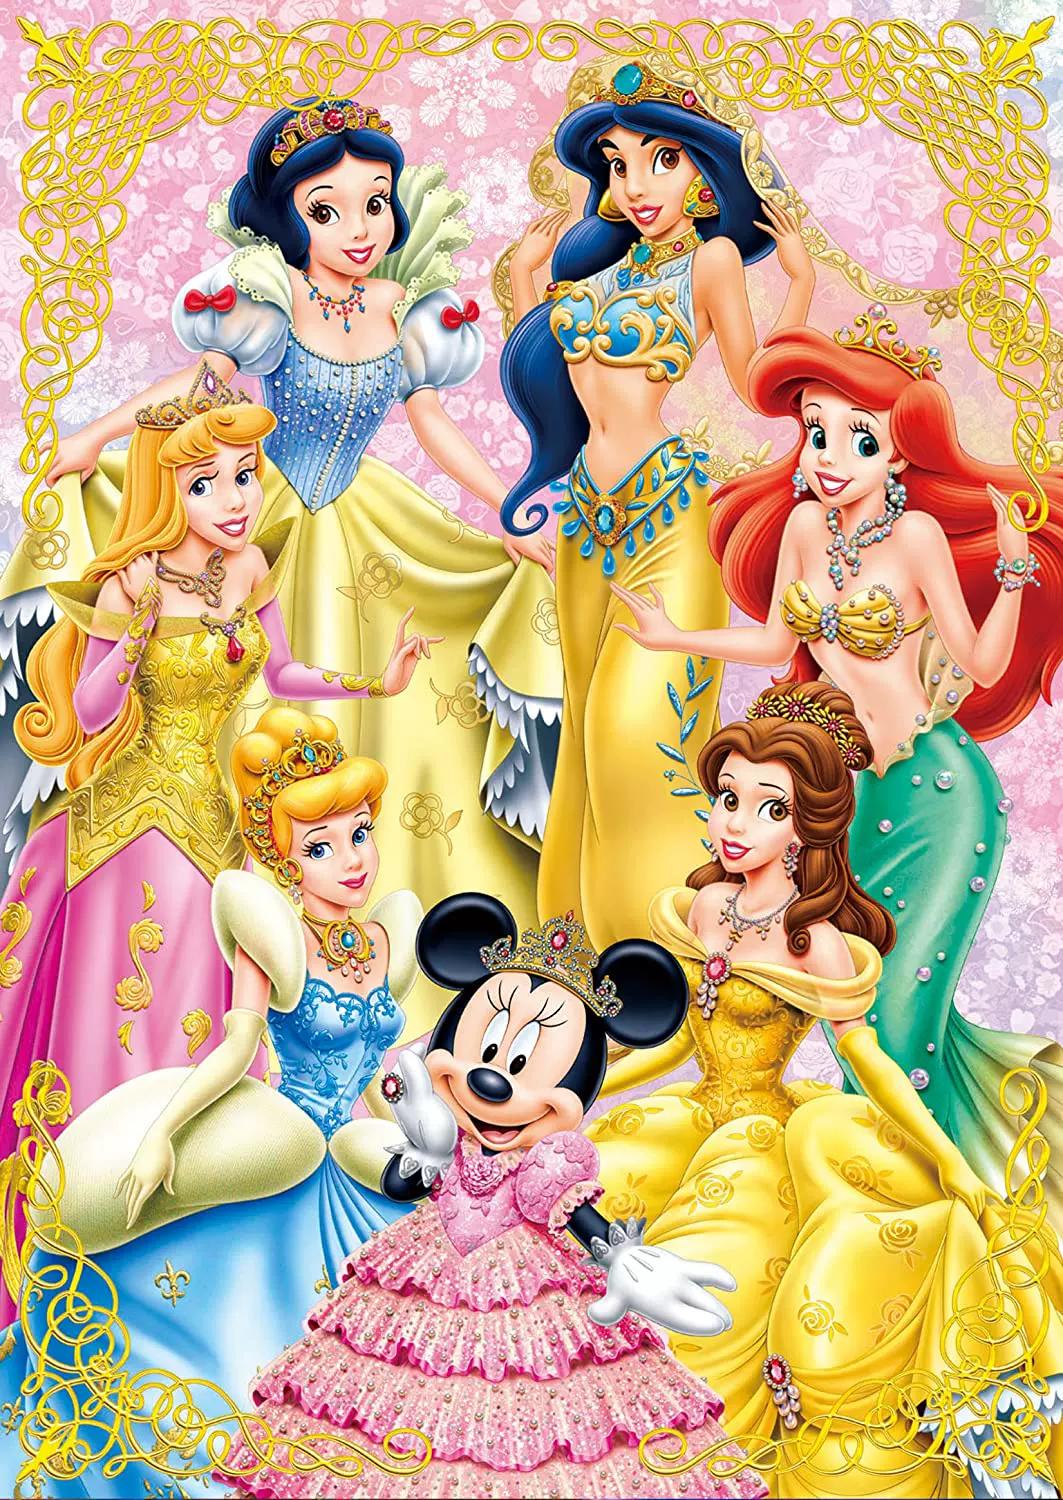 Disney Princess Mermaid Snow White Jasmine 30*50CM(Canvas) Full Round Drill Diamond Painting gbfke